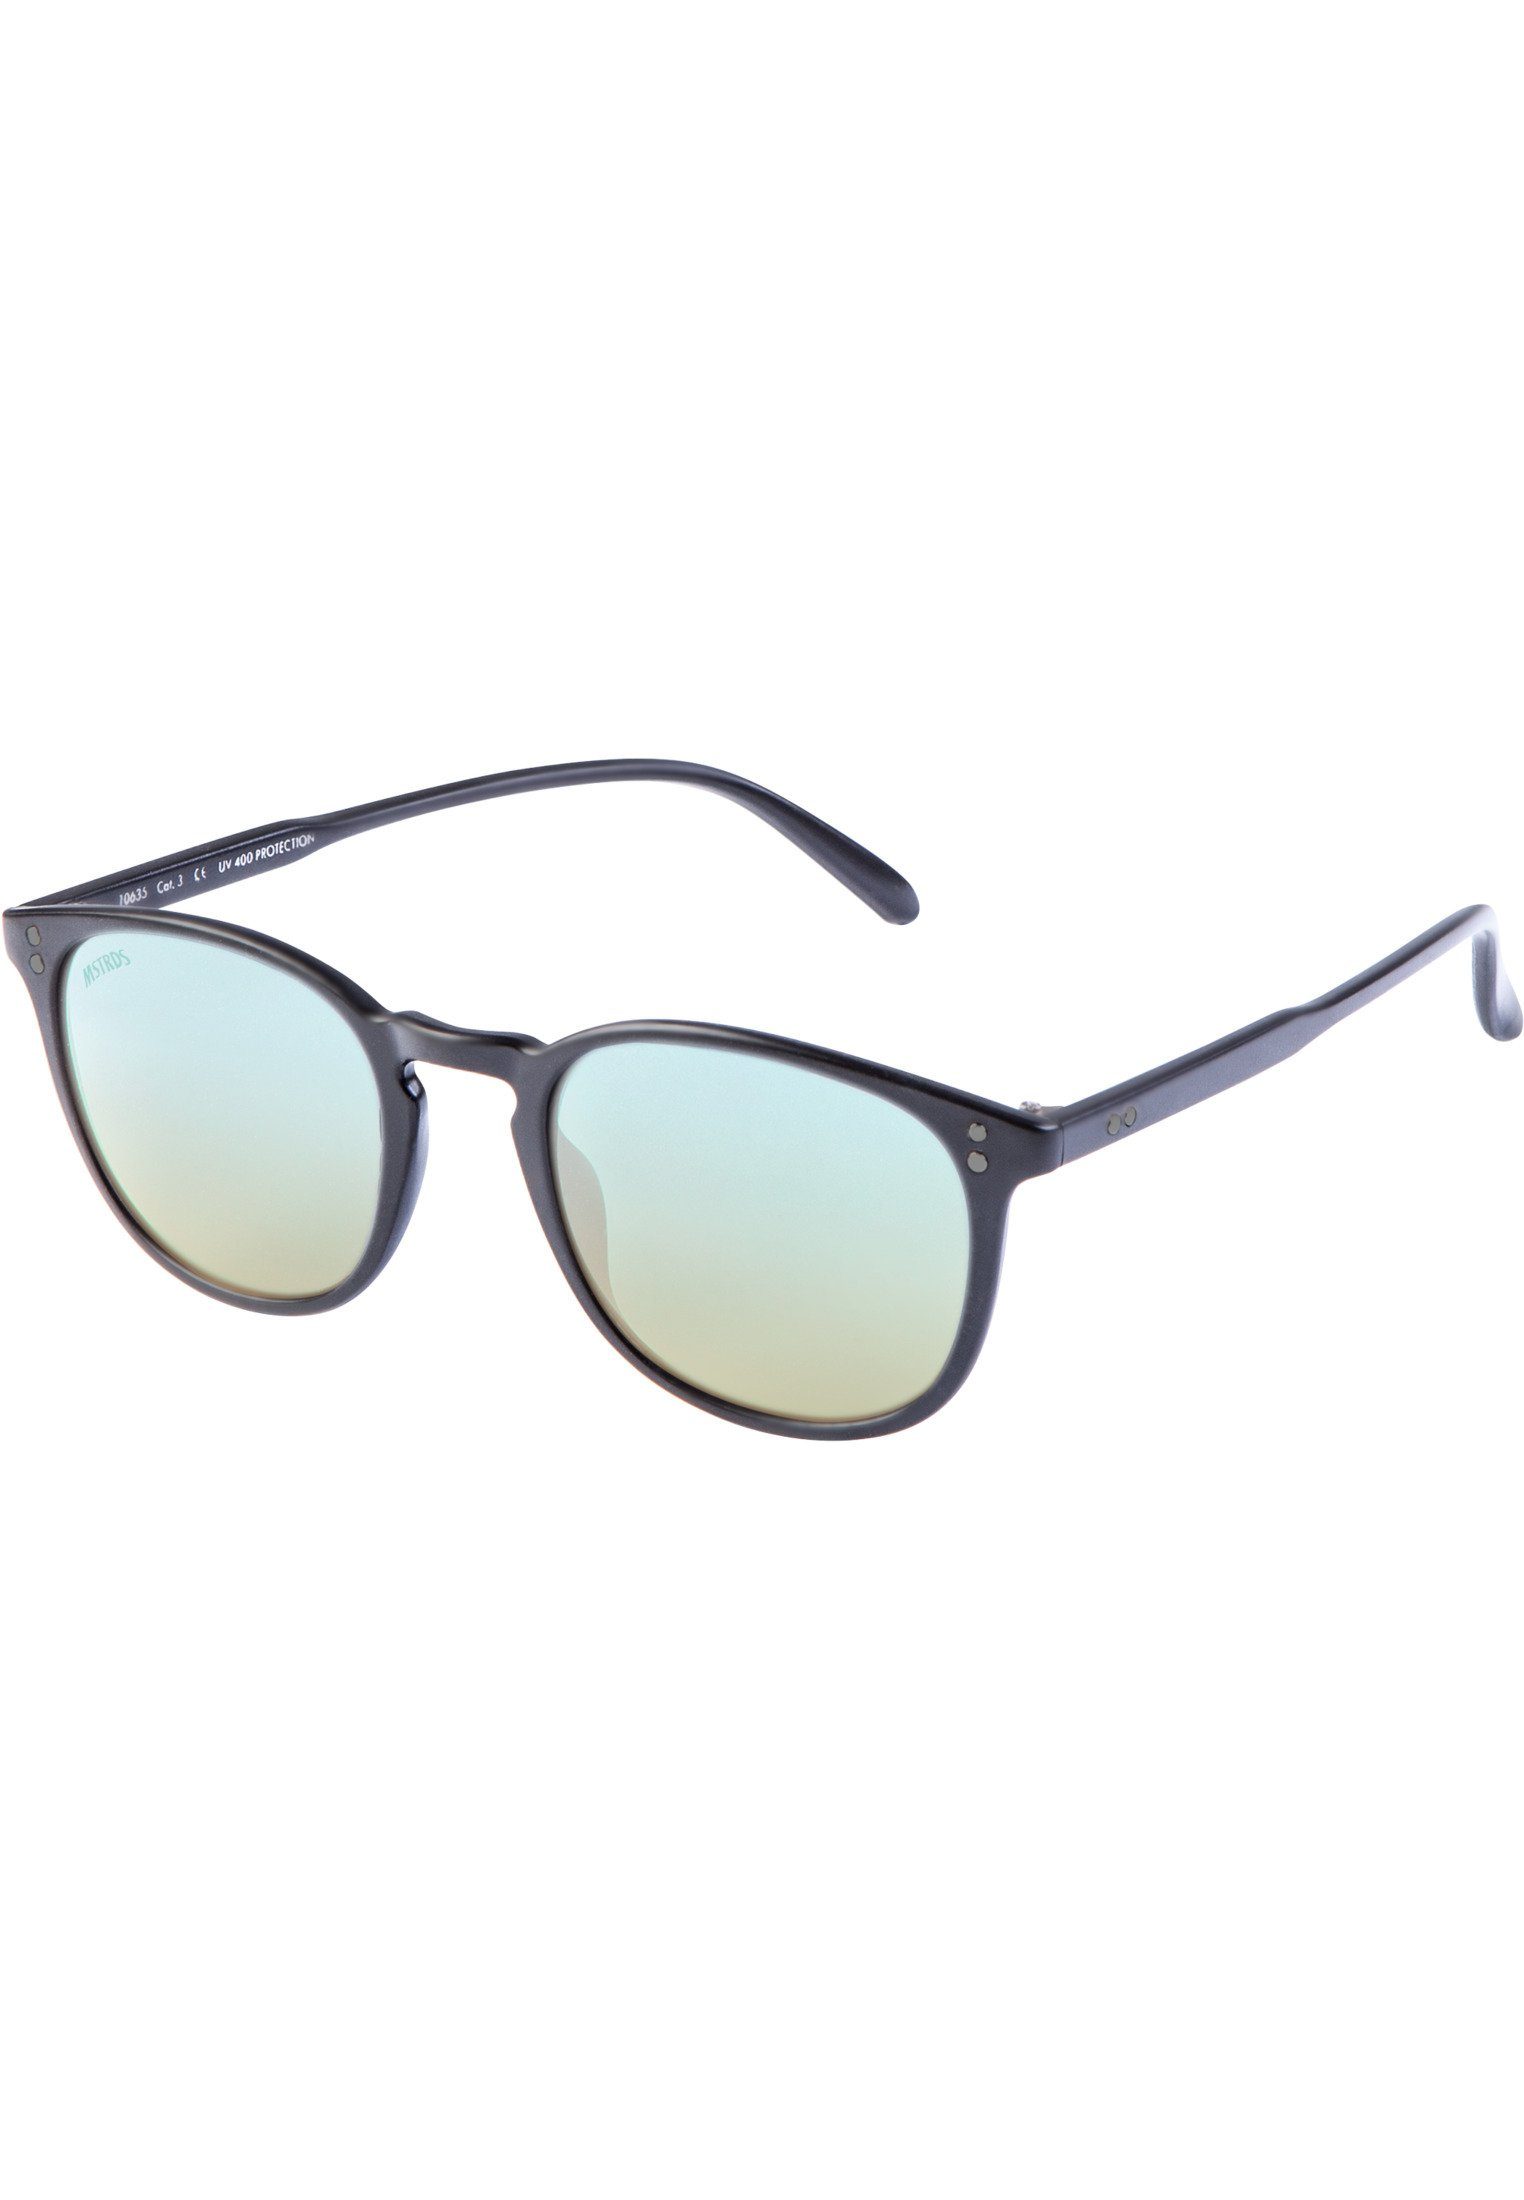 Sonnenbrille blk/blue Accessoires MSTRDS Sunglasses Youth Arthur